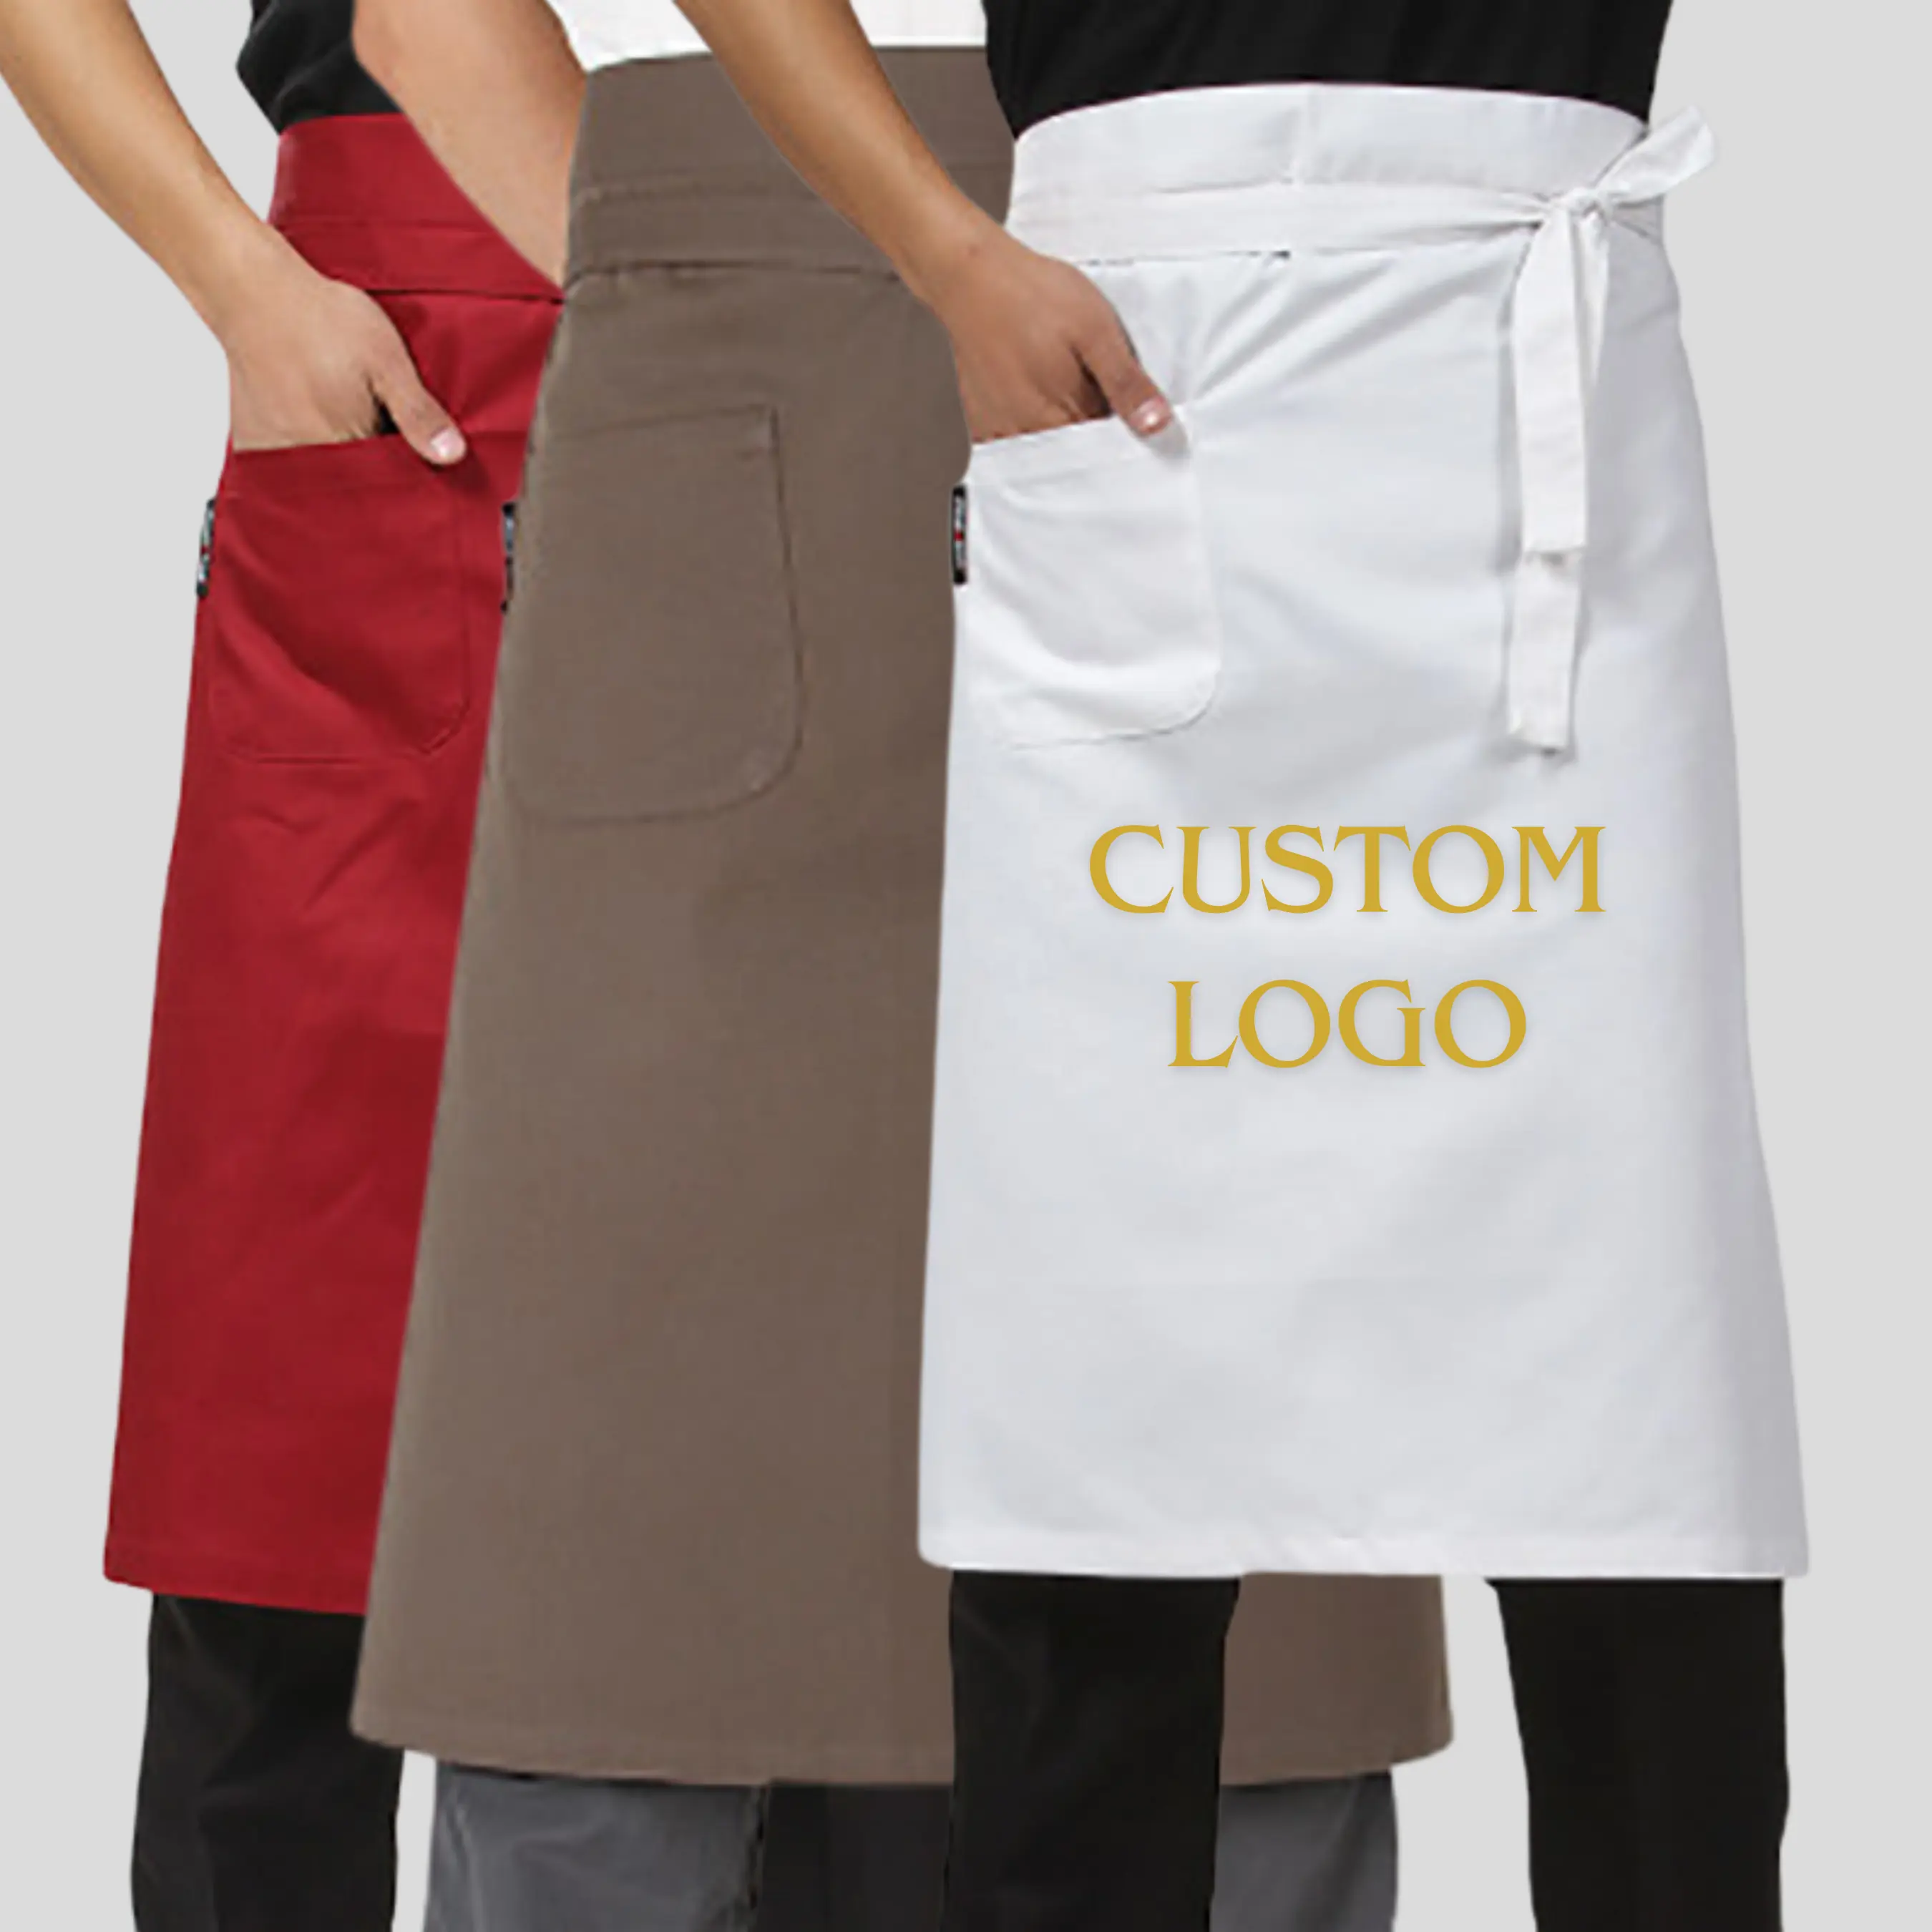 Demi-tabliers de cuisine en coton avec logo personnalisé, chef de cuisine, broderie imprimée, uniformes de serveur de café et design d'uniforme d'hôtel